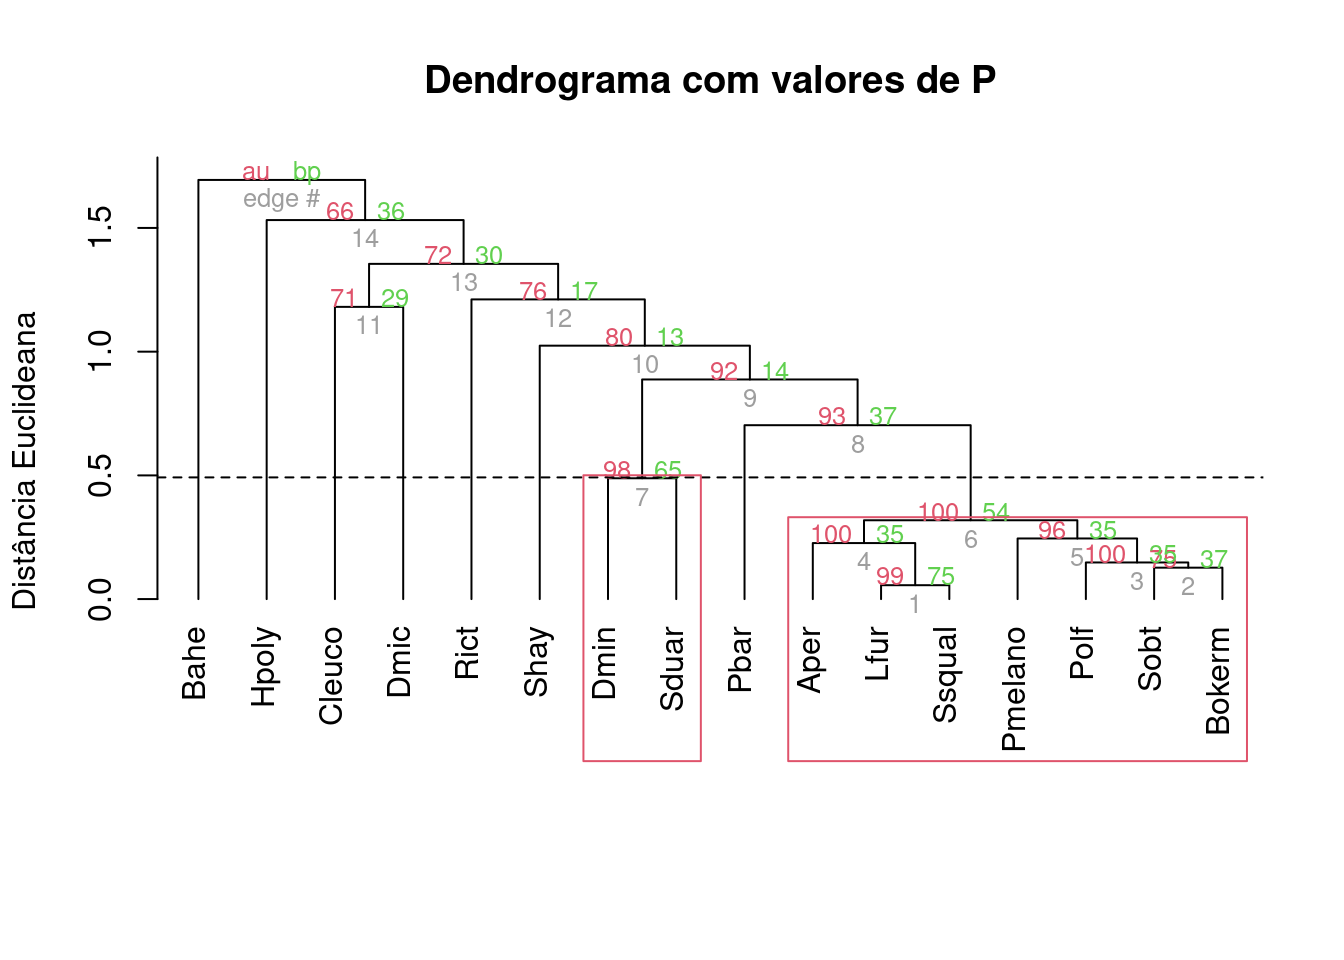 Dendrograma mostrando uma análise de agrupamento de anuros com uma linha de corte criada por bootstrap e usando distância de Hellinger.